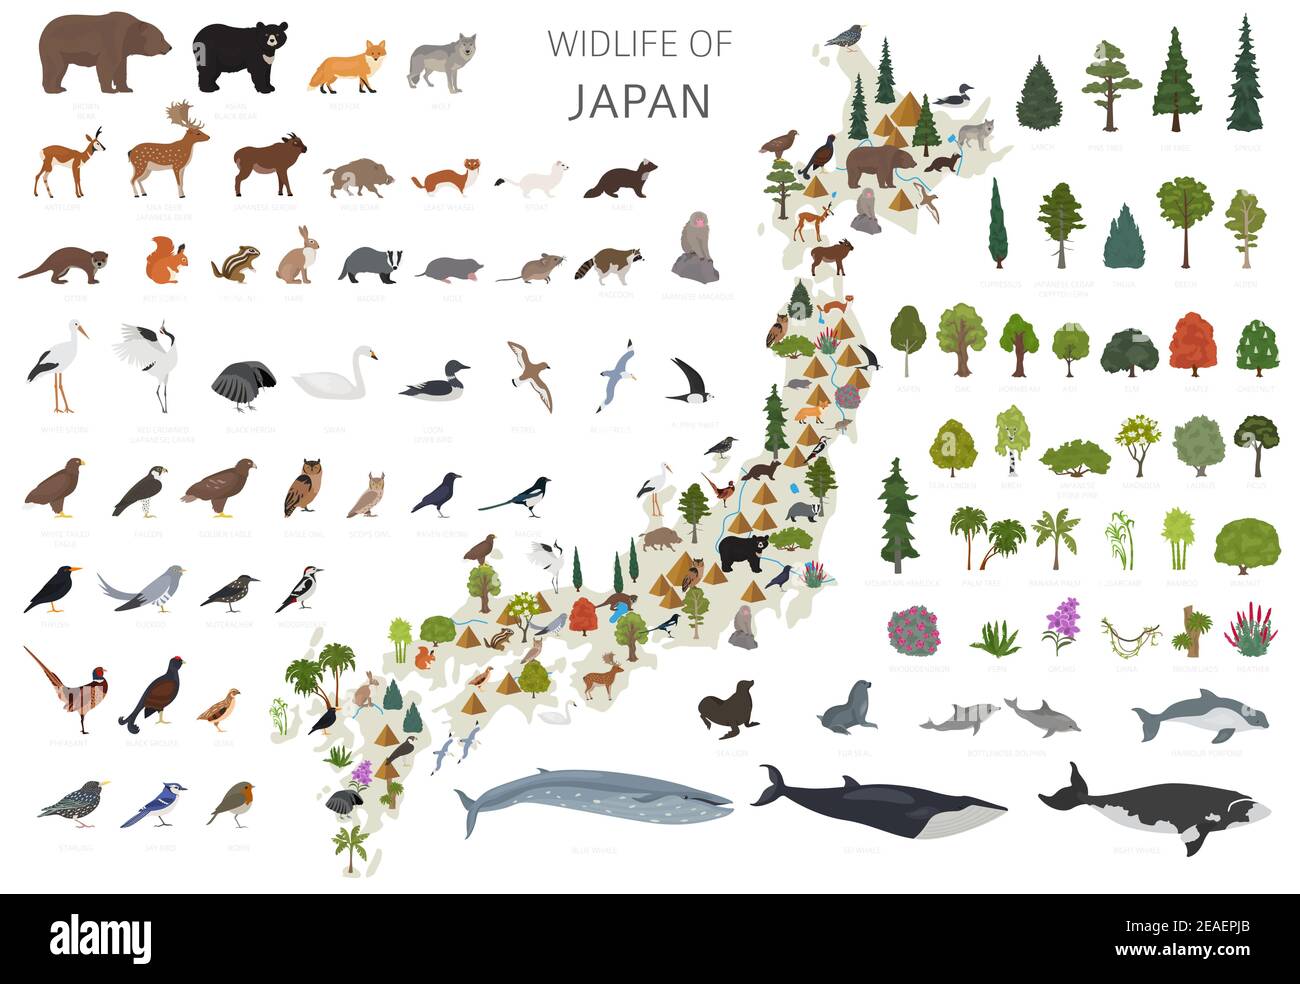 Conception plate de la faune japonaise. Animaux, oiseaux et plantes éléments constructeurs isolés sur un ensemble blanc. Créez votre propre collection d'infographies géographiques. Illustration de Vecteur